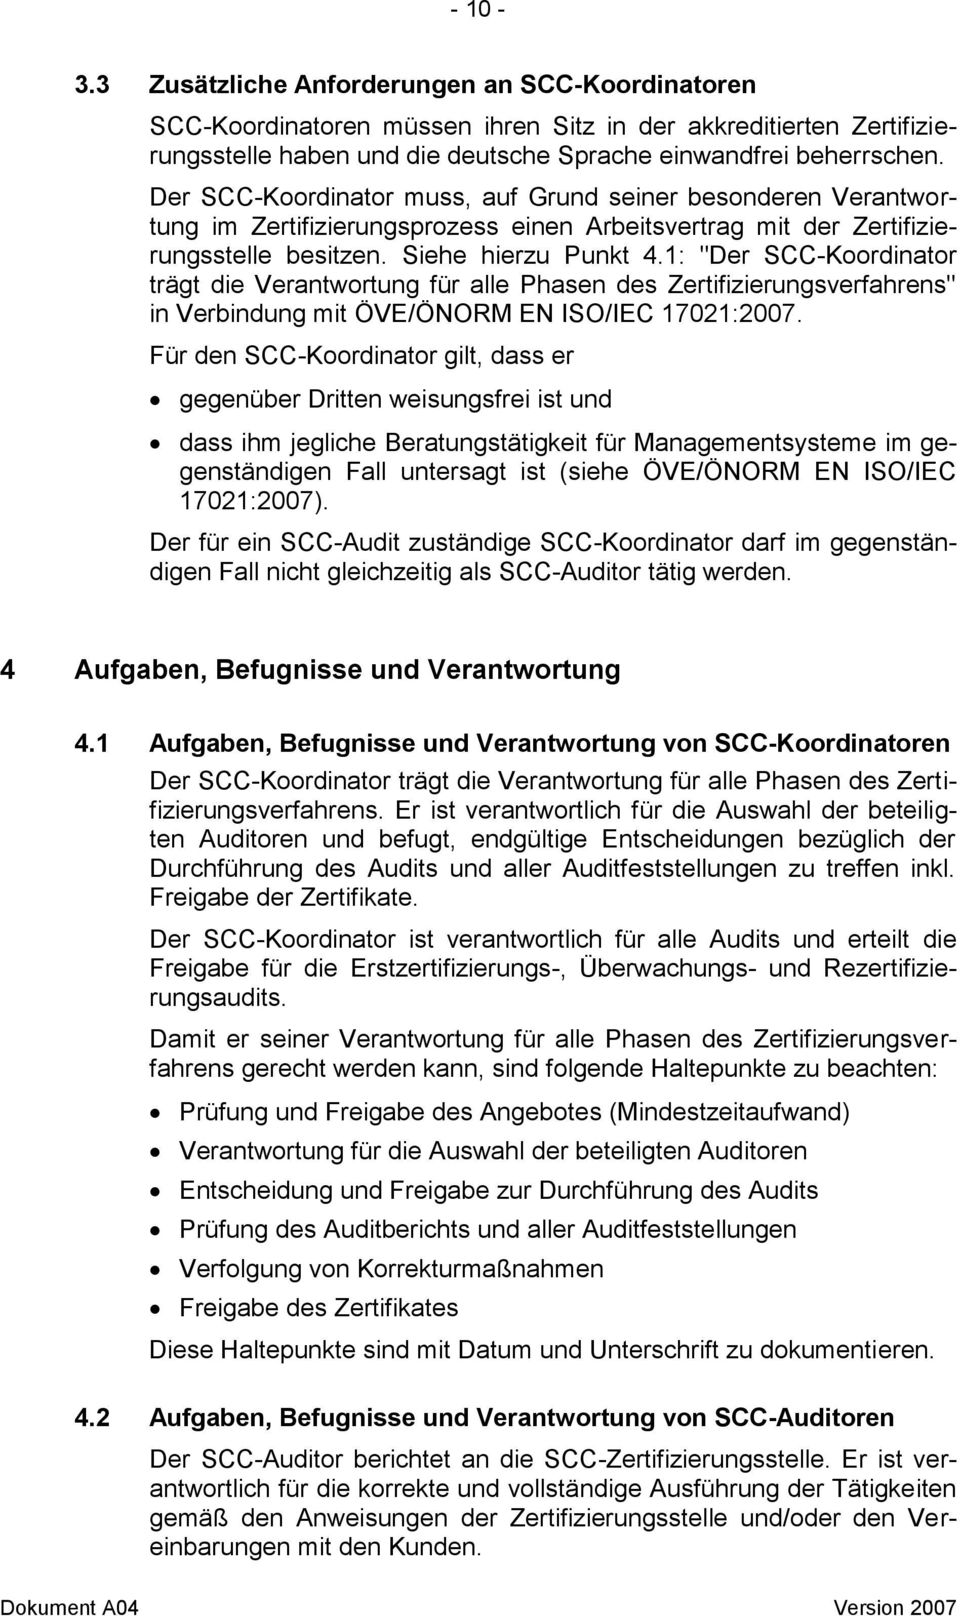 1: "Der SCC-Koordinator trägt die Verantwortung für alle Phasen des Zertifizierungsverfahrens" in Verbindung mit ÖVE/ÖNORM EN ISO/IEC 17021:2007.